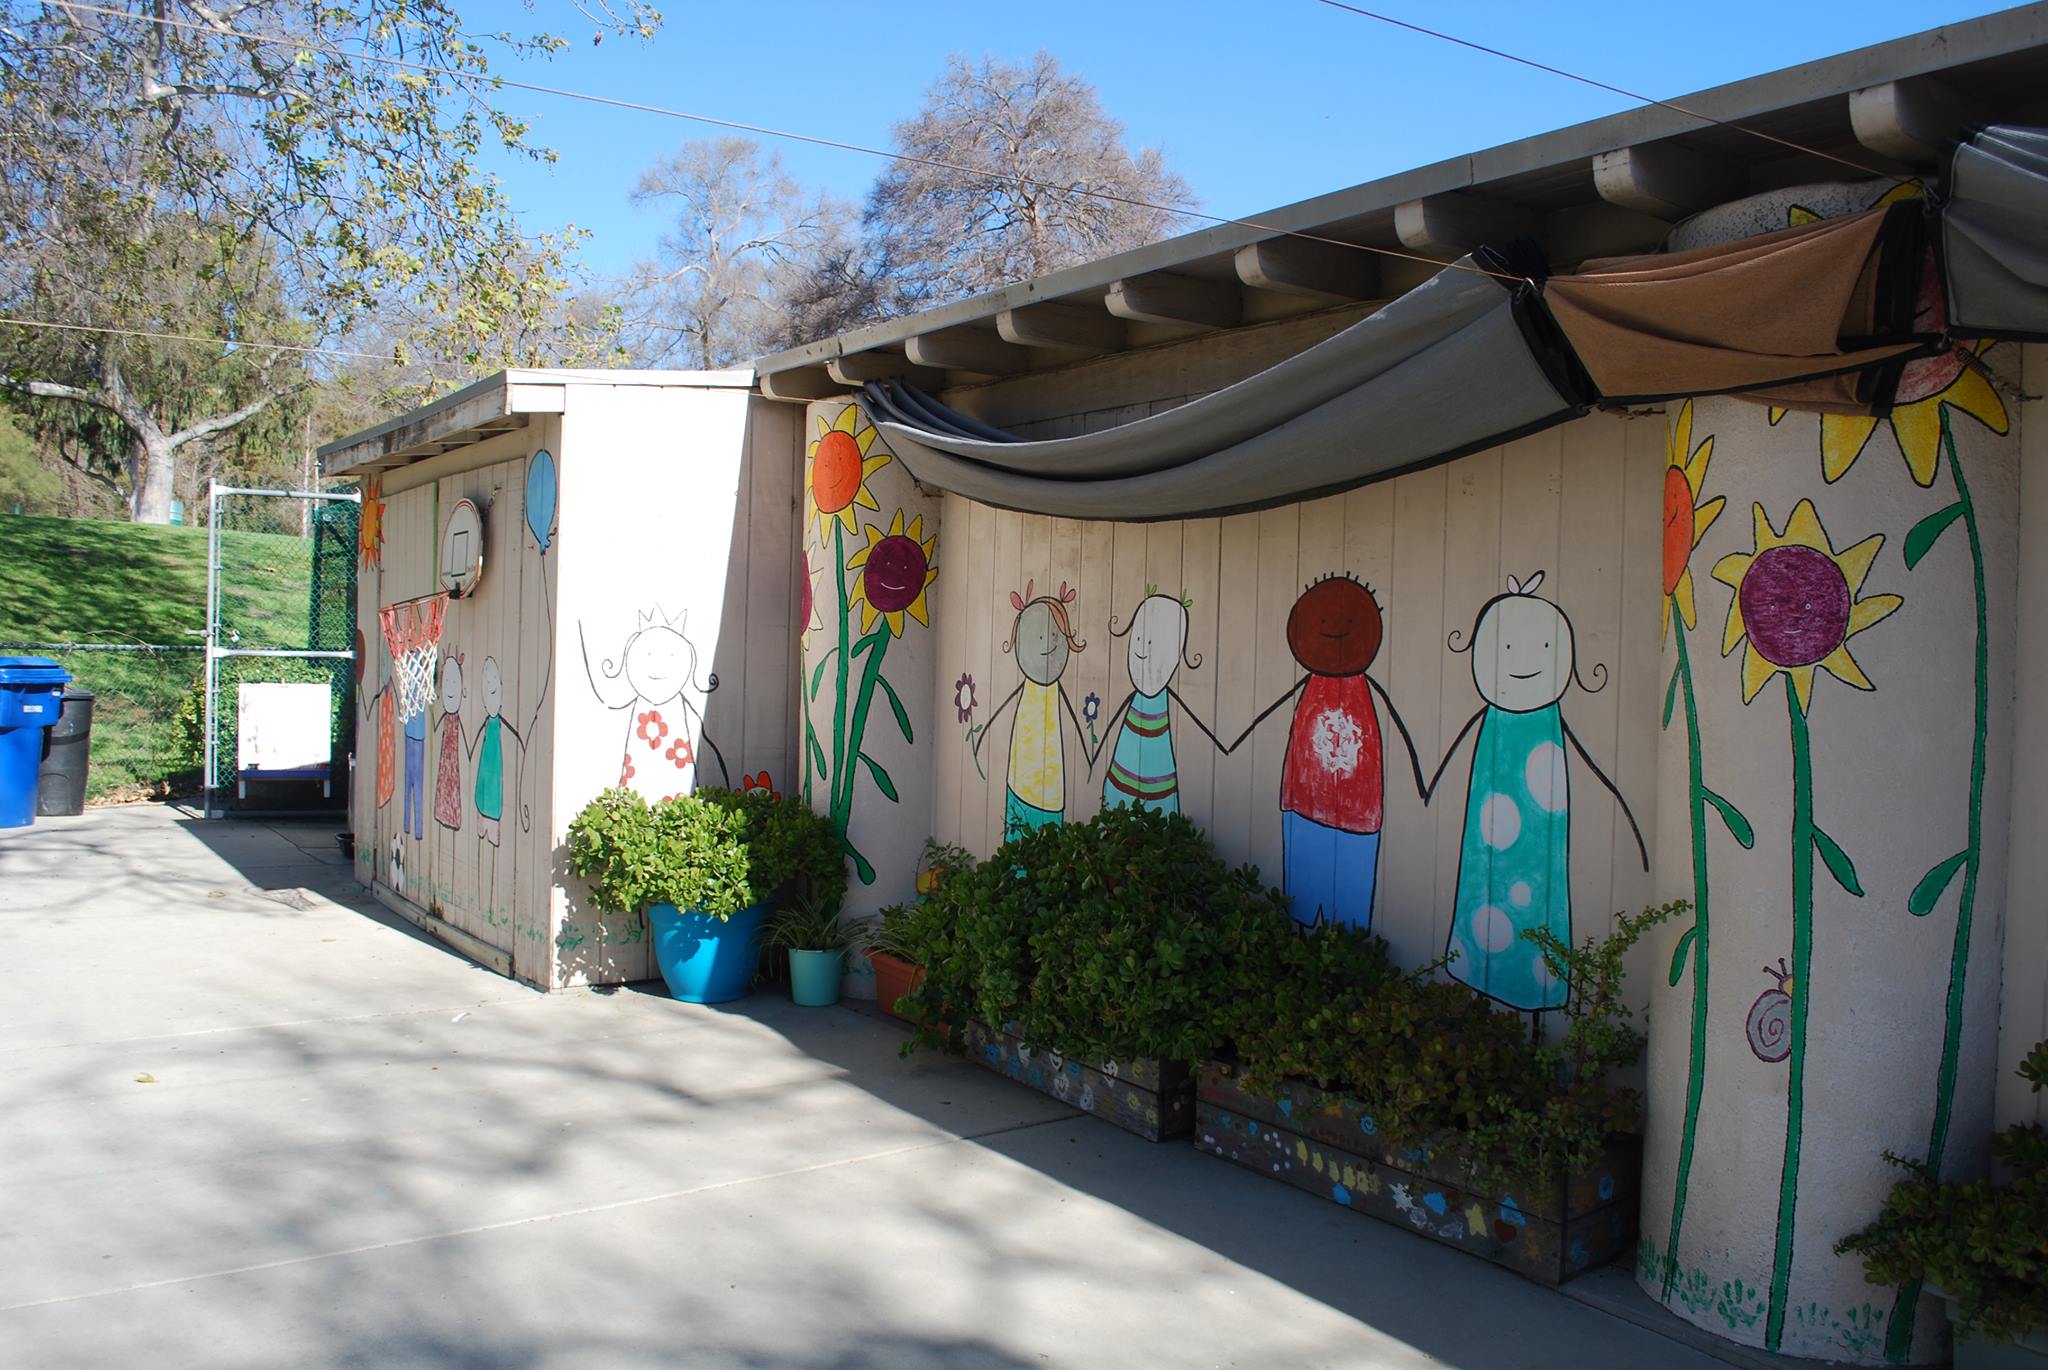 Los Feliz Cooperative Nursery School